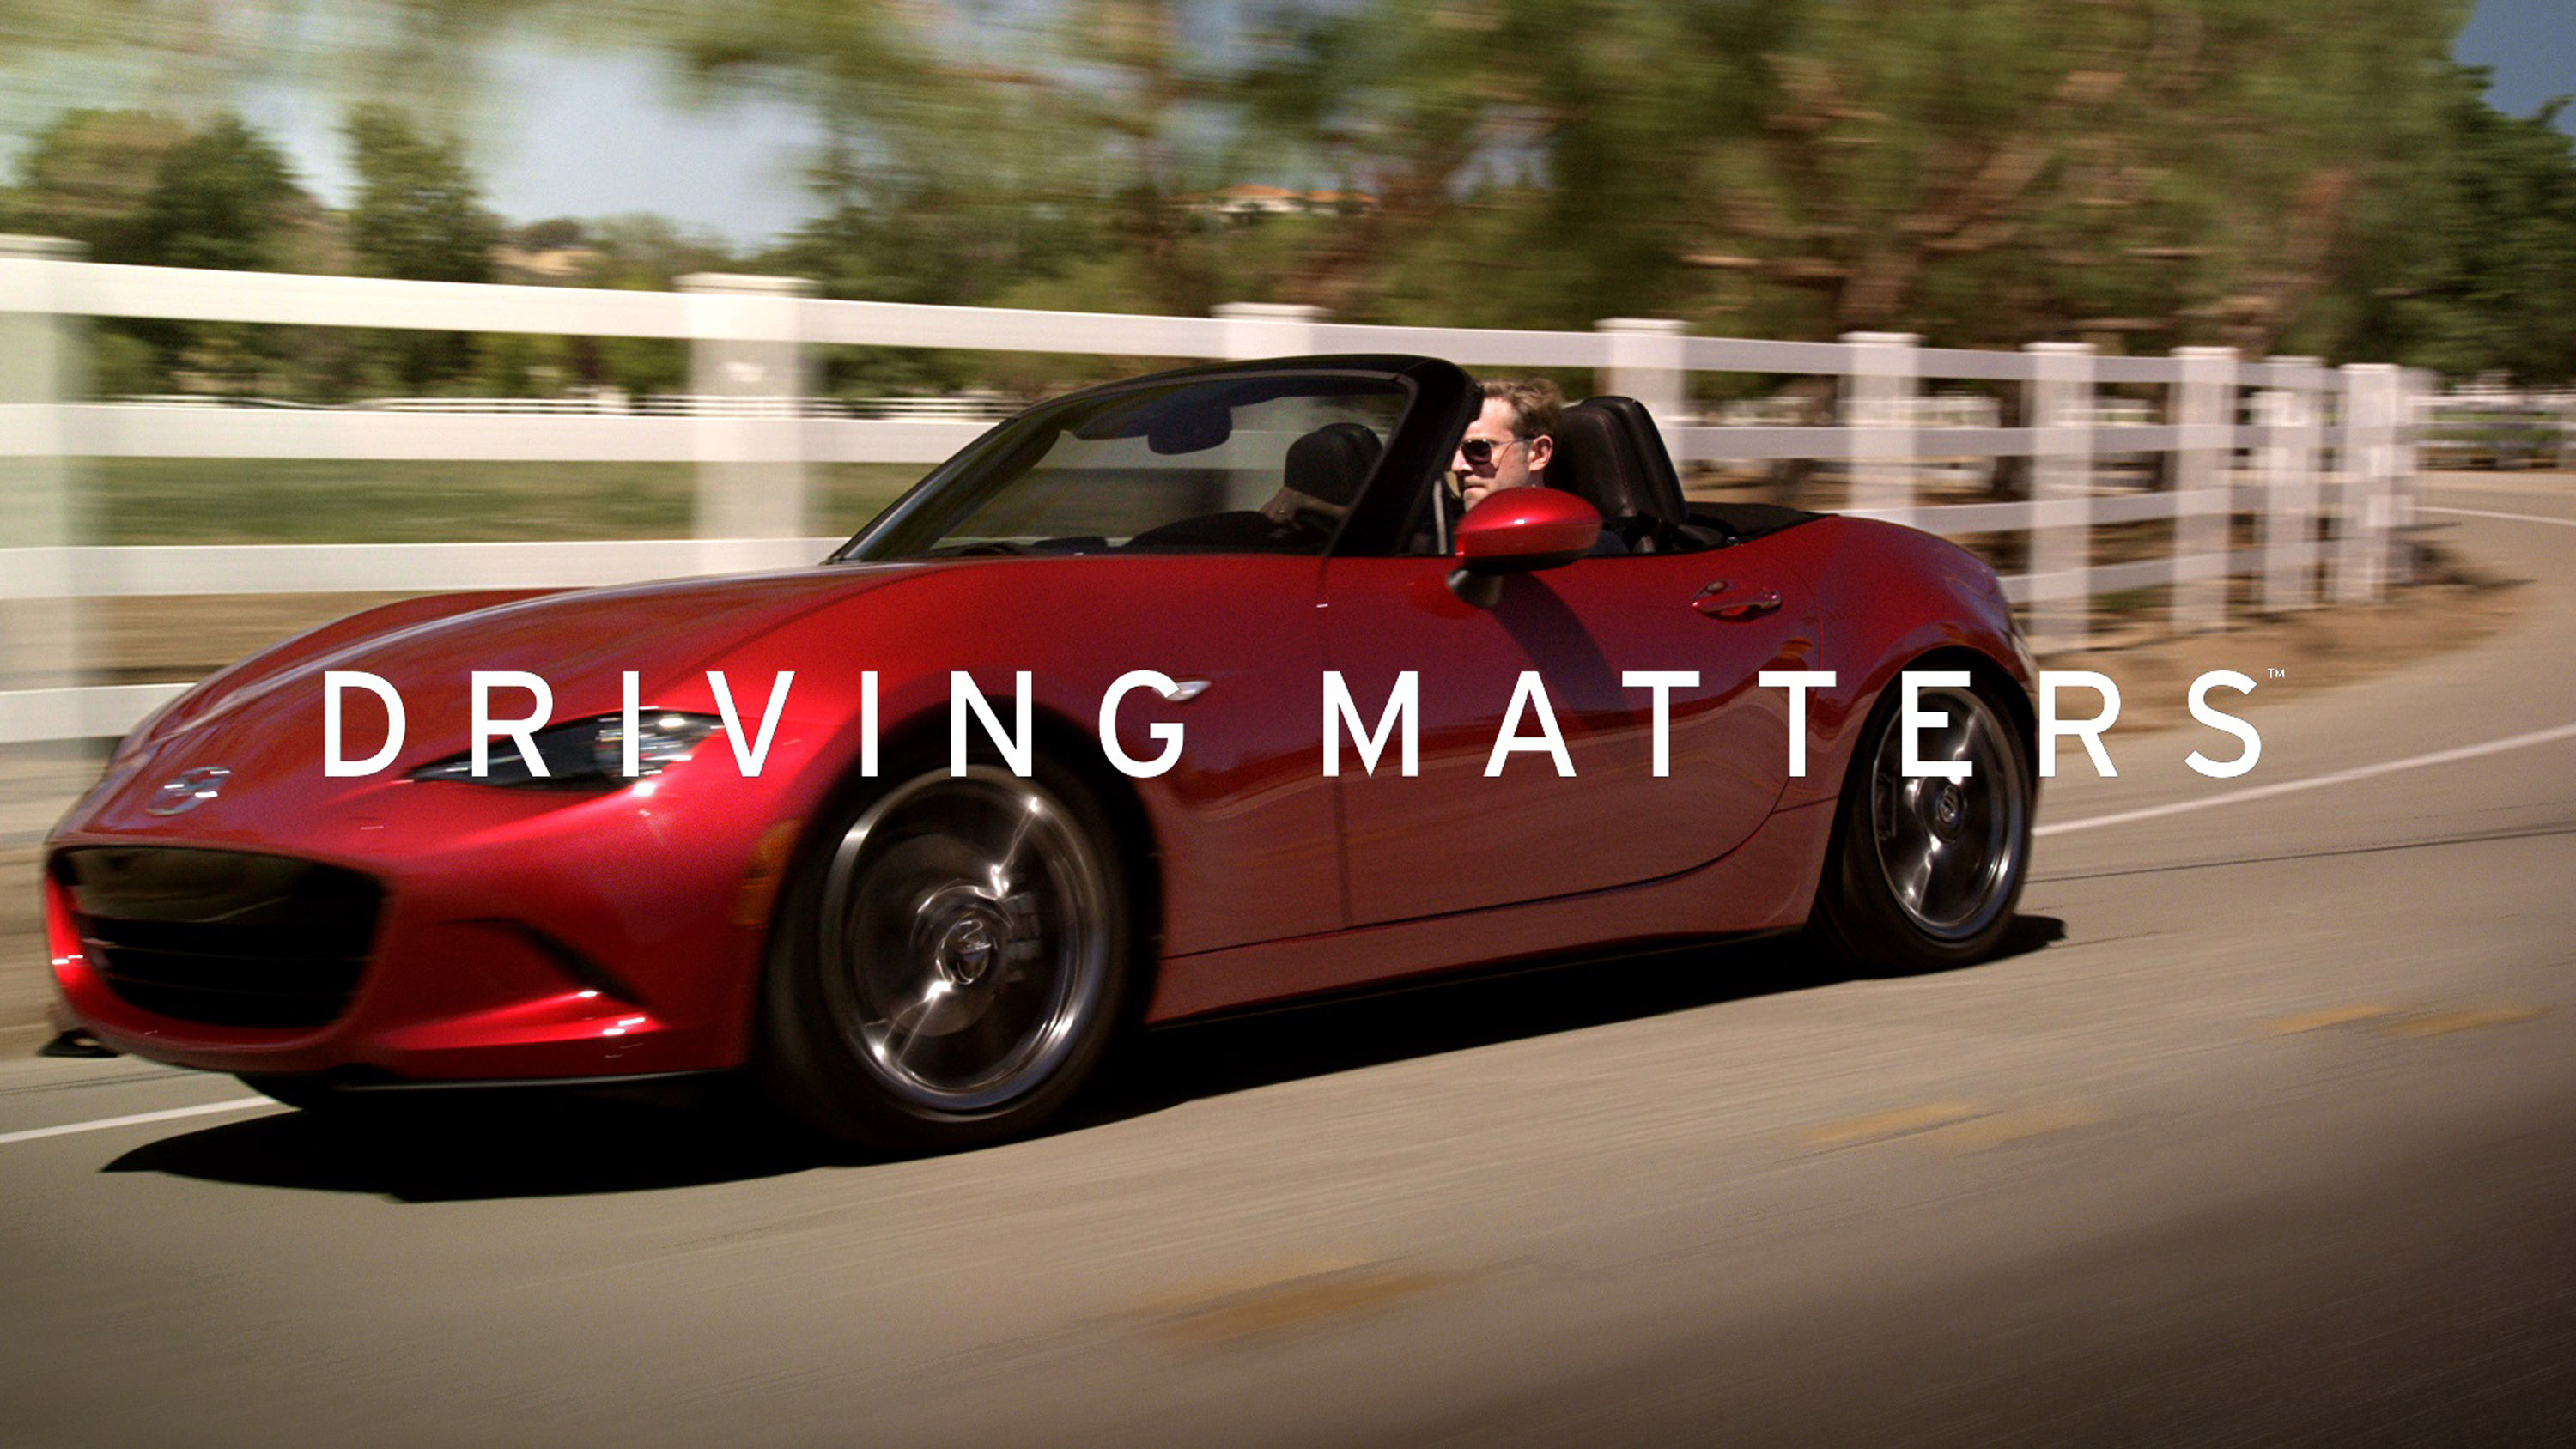 Mazda Drive Matters Campaign